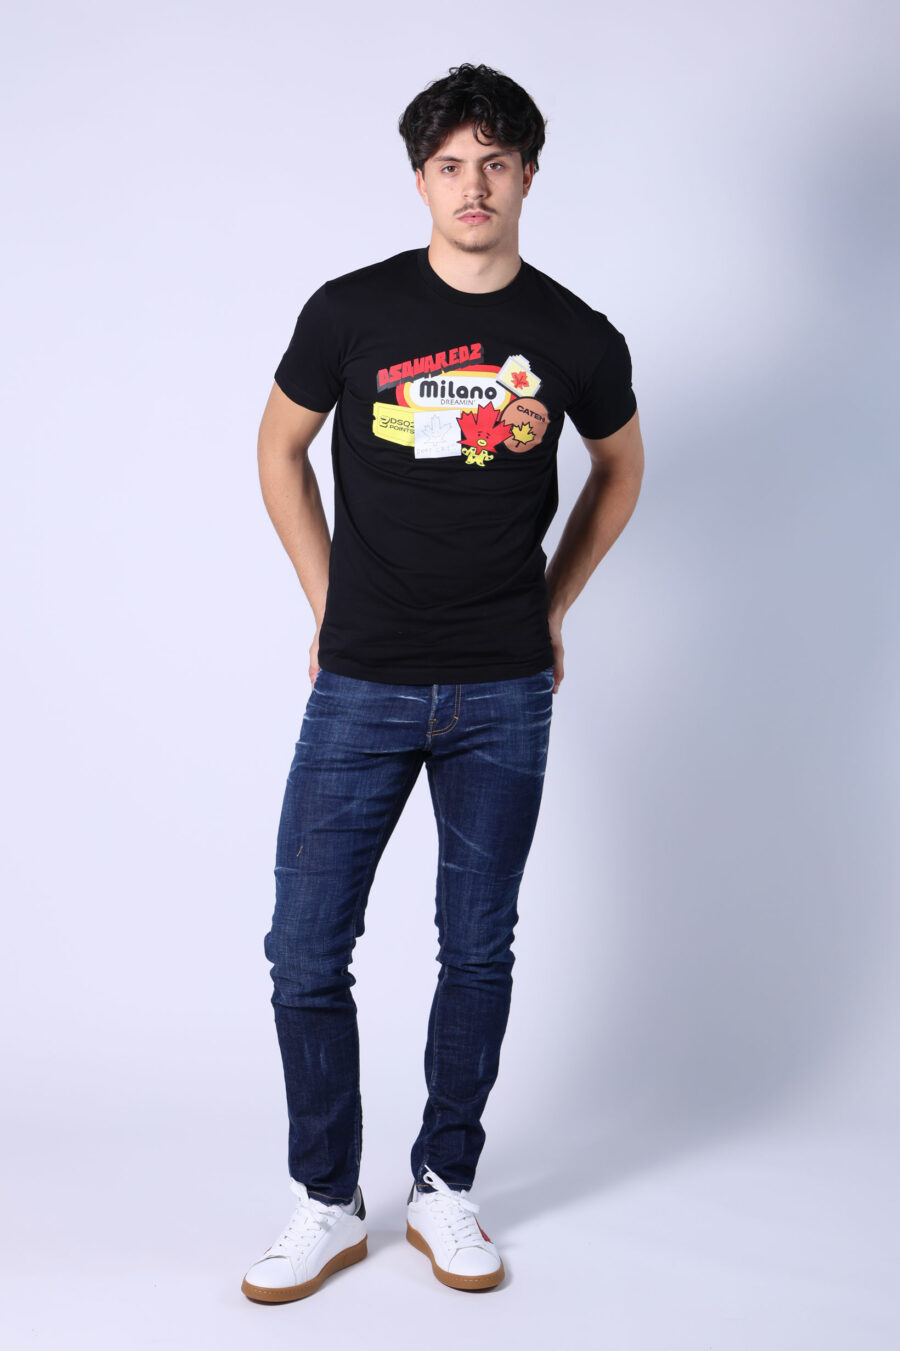 T-shirt preta com o logótipo "sitckers" maxi - Untitled Catalog 05492